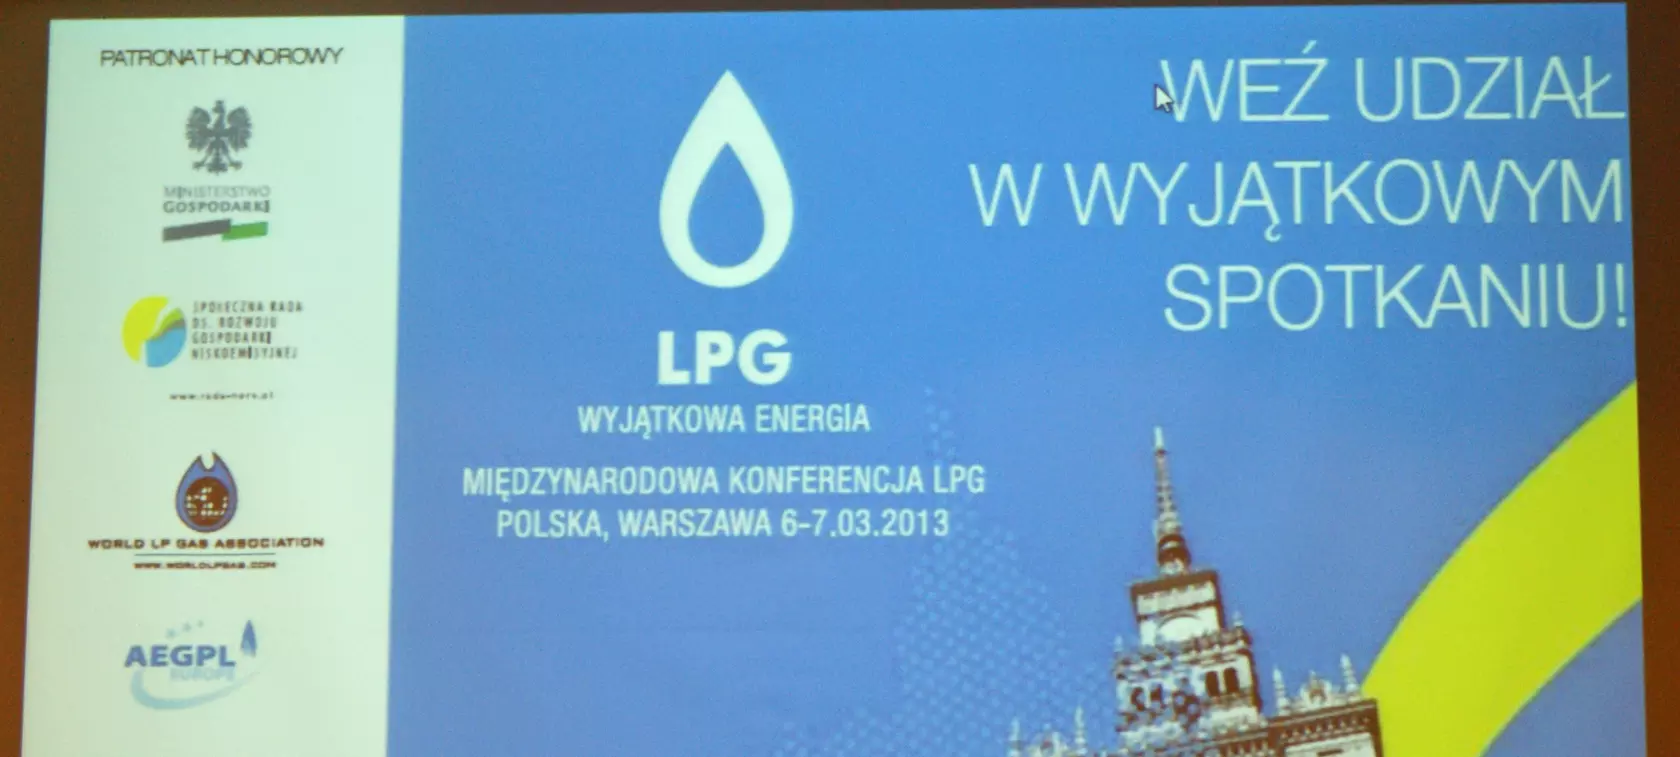 LPG - Wyjątkowa Energia 2013: może być lepiej